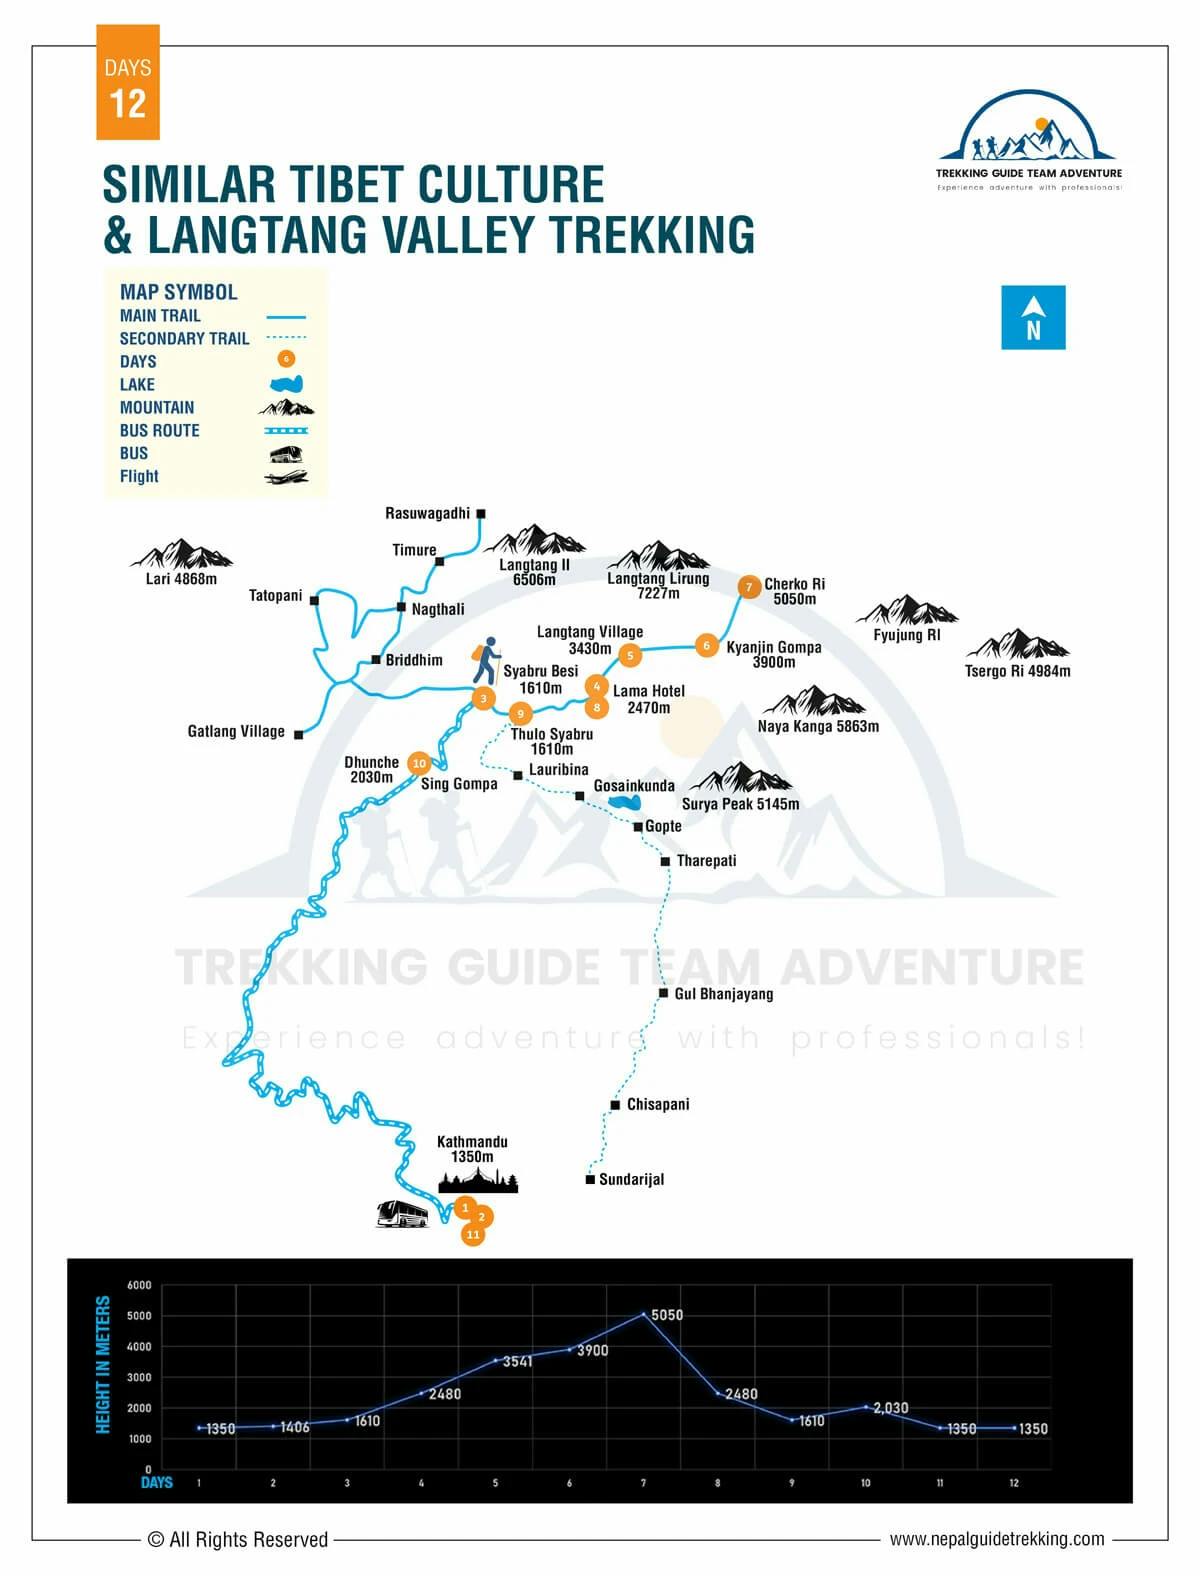 Similar Tibet Culture and Langtang Valley Trekking - 12 Days